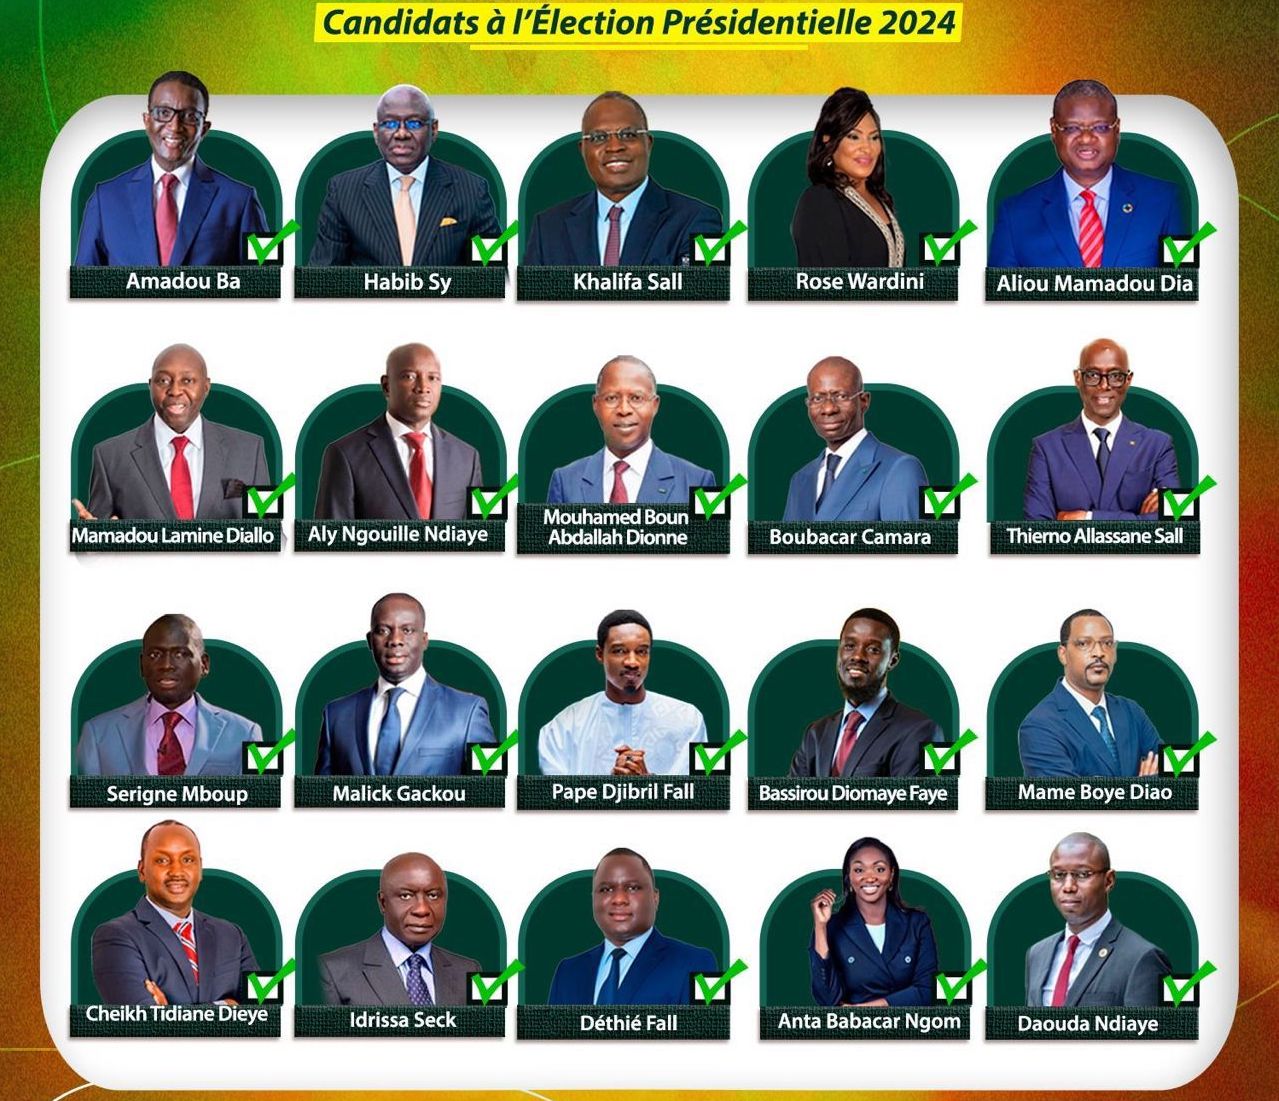 La course présidentielle sénégalaise : Un casting de 20 acteurs prometteurs pour le changement